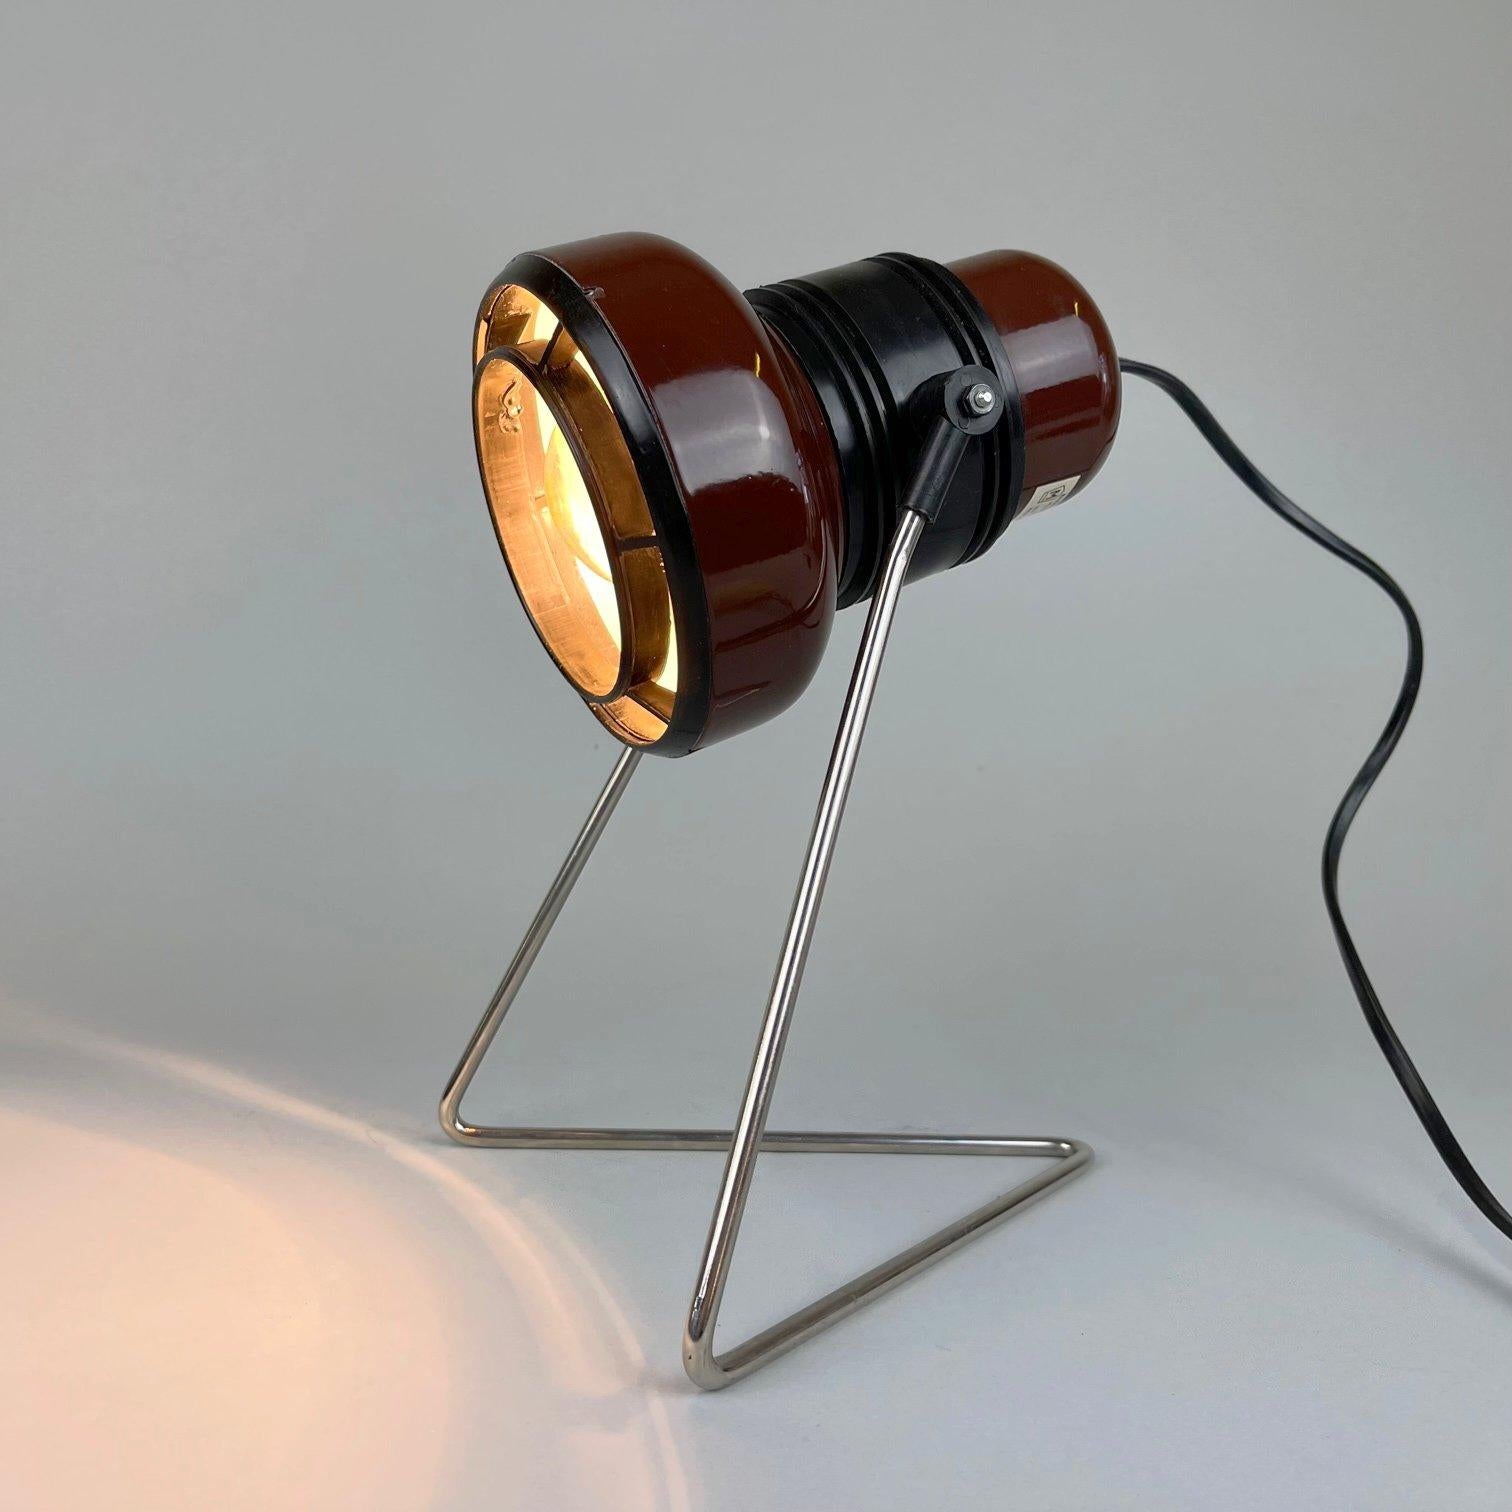 Verstellbare Vintage-Tischlampe aus Metall und Kunststoff. Kann auch an die Wand gehängt werden. Glühbirne: 1 x E25-E27.
 